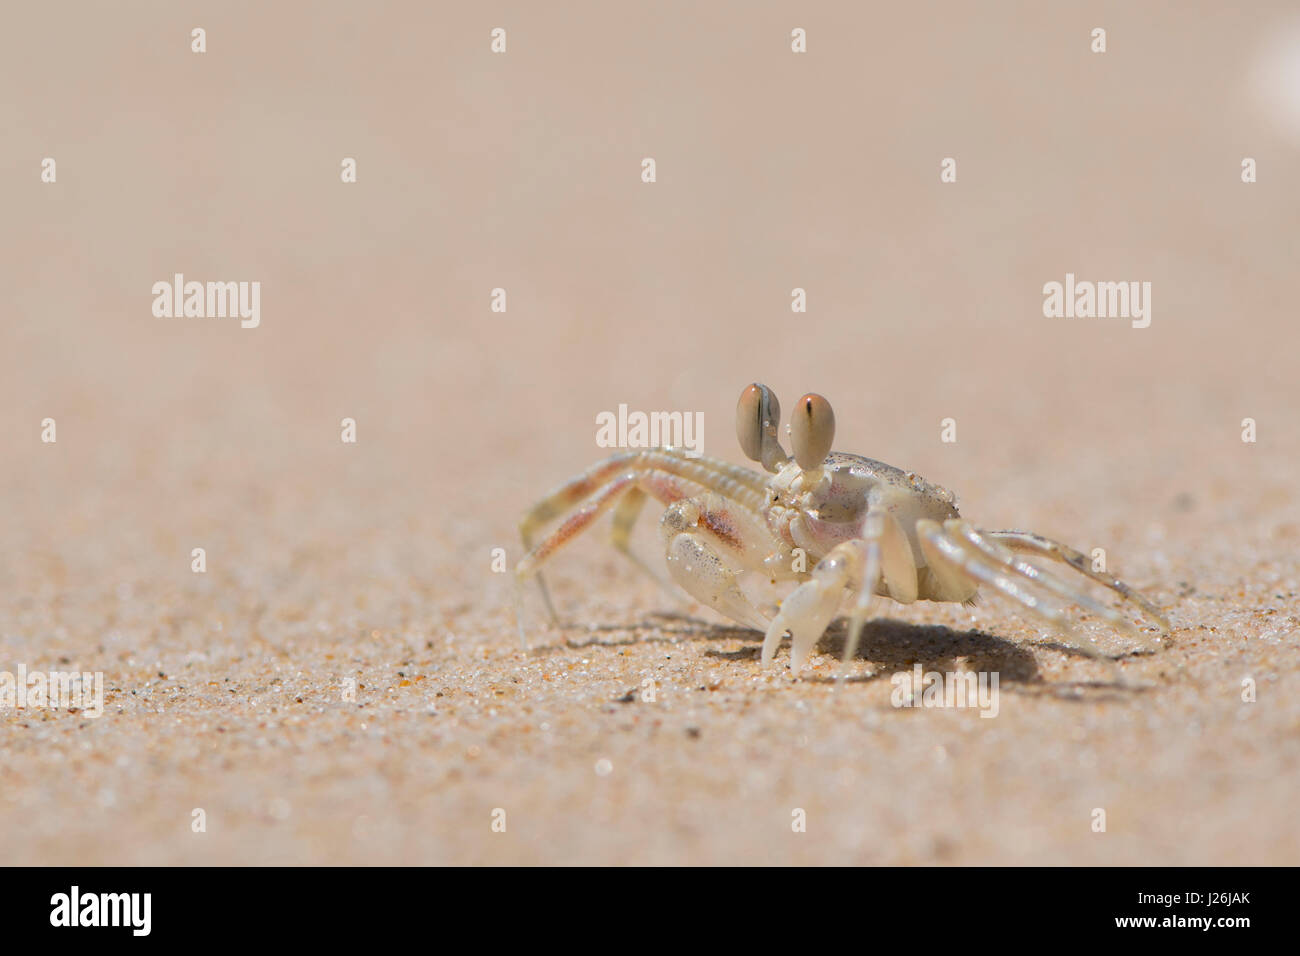 Jeune crabe vert européen (Carcinus maenas), Phan Thiet, Vietnam Banque D'Images